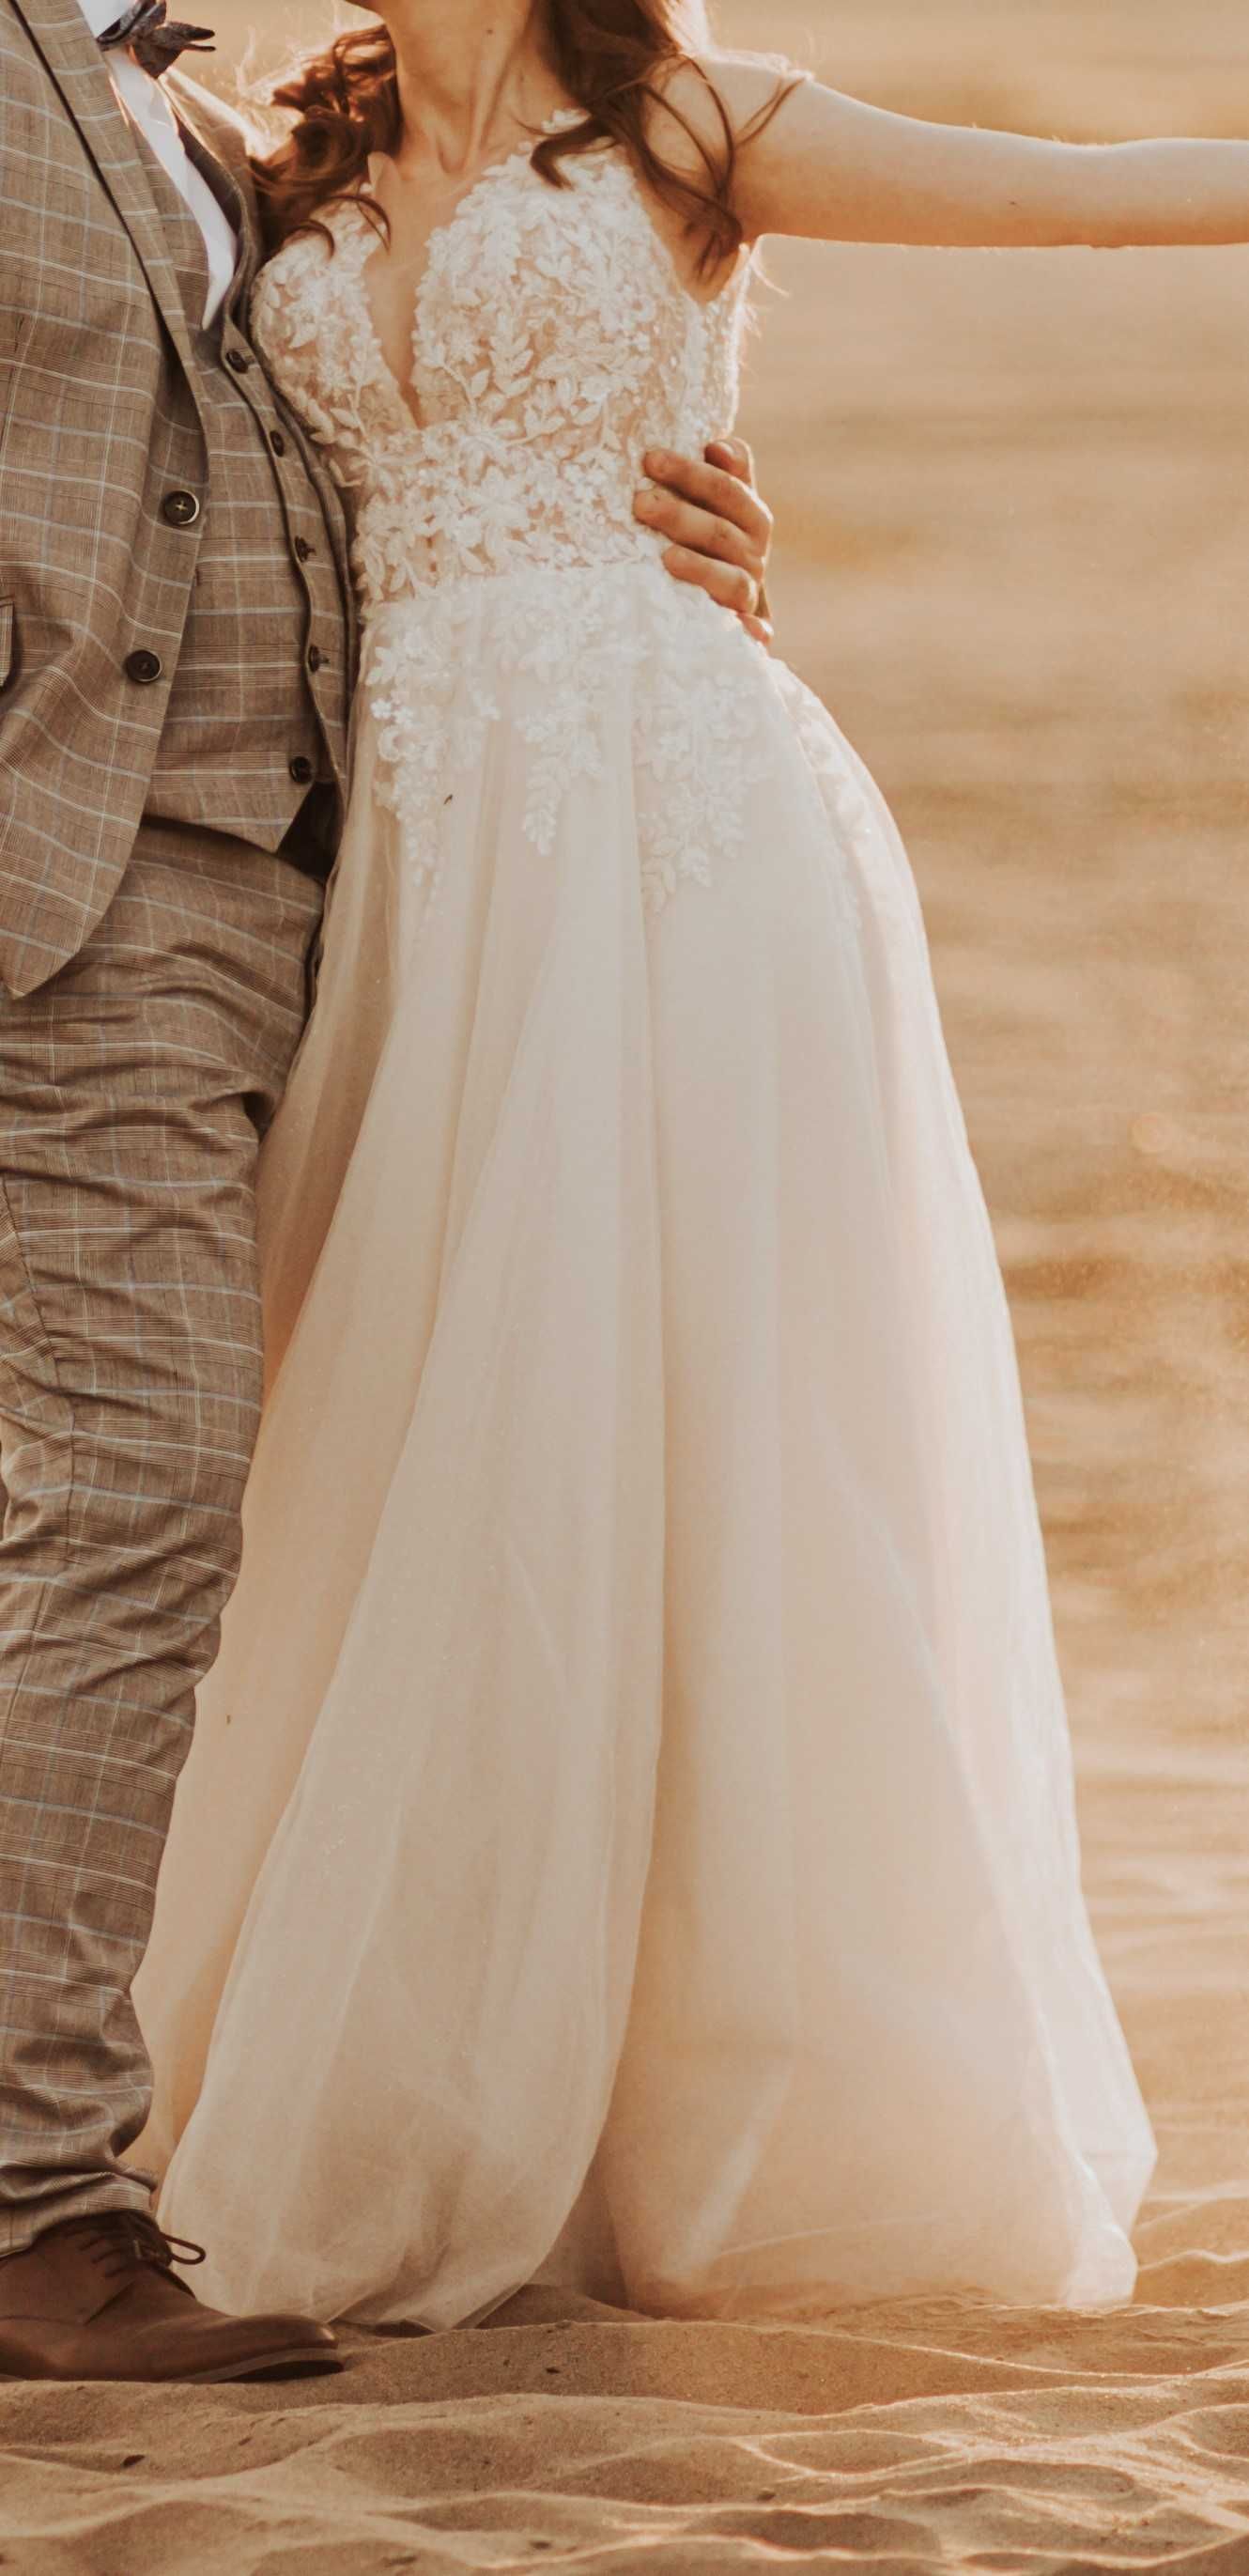 Suknia ślubna - 158cm wzrostu